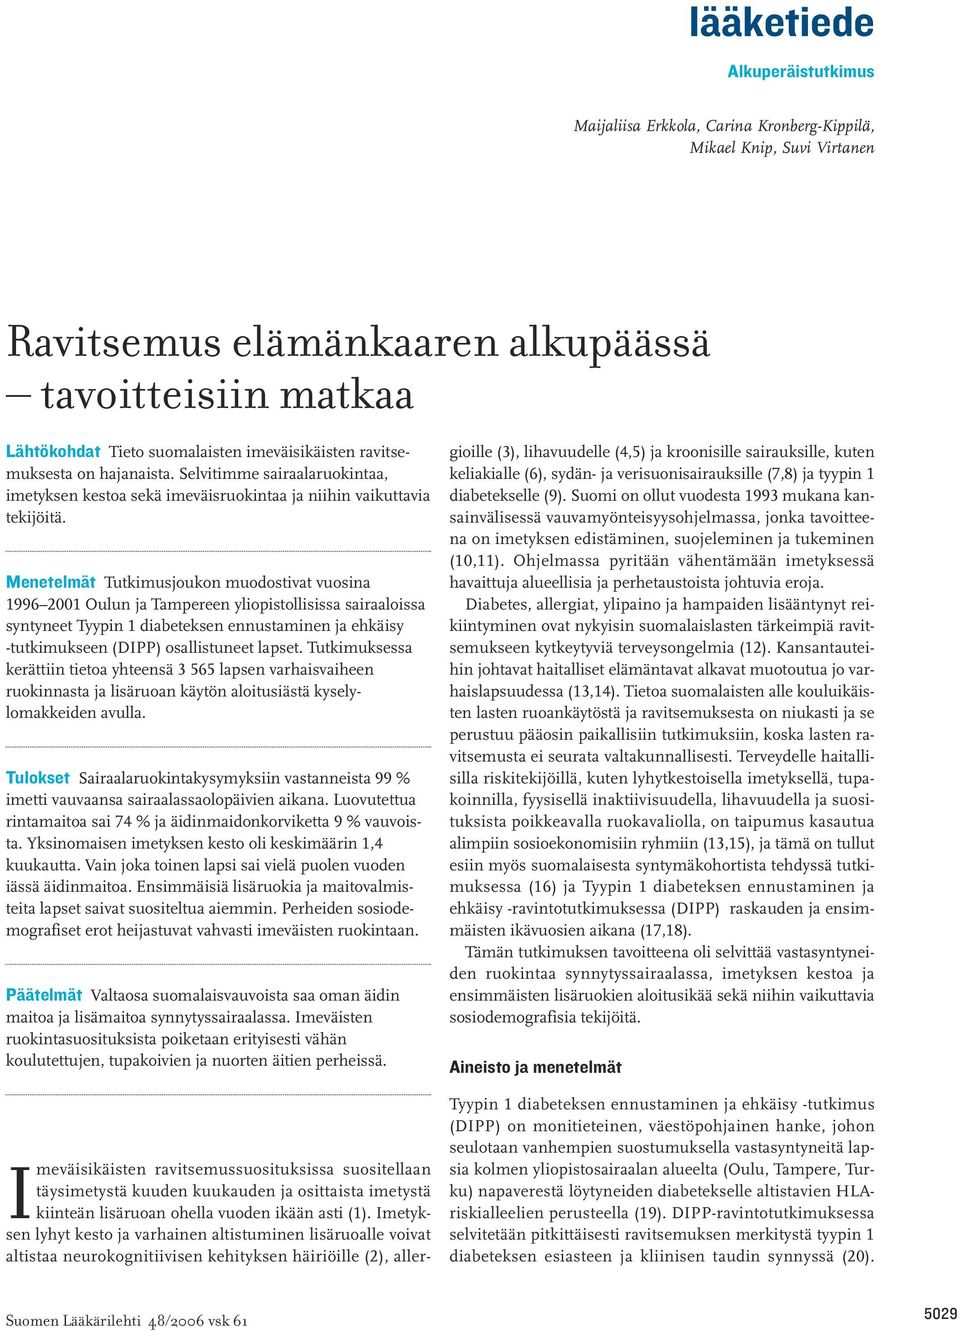 Menetelmät Tutkimusjoukon muodostivat vuosina 1996 2001 Oulun ja Tampereen yliopistollisissa sairaaloissa syntyneet Tyypin 1 diabeteksen ennustaminen ja ehkäisy -tutkimukseen (DIPP) osallistuneet